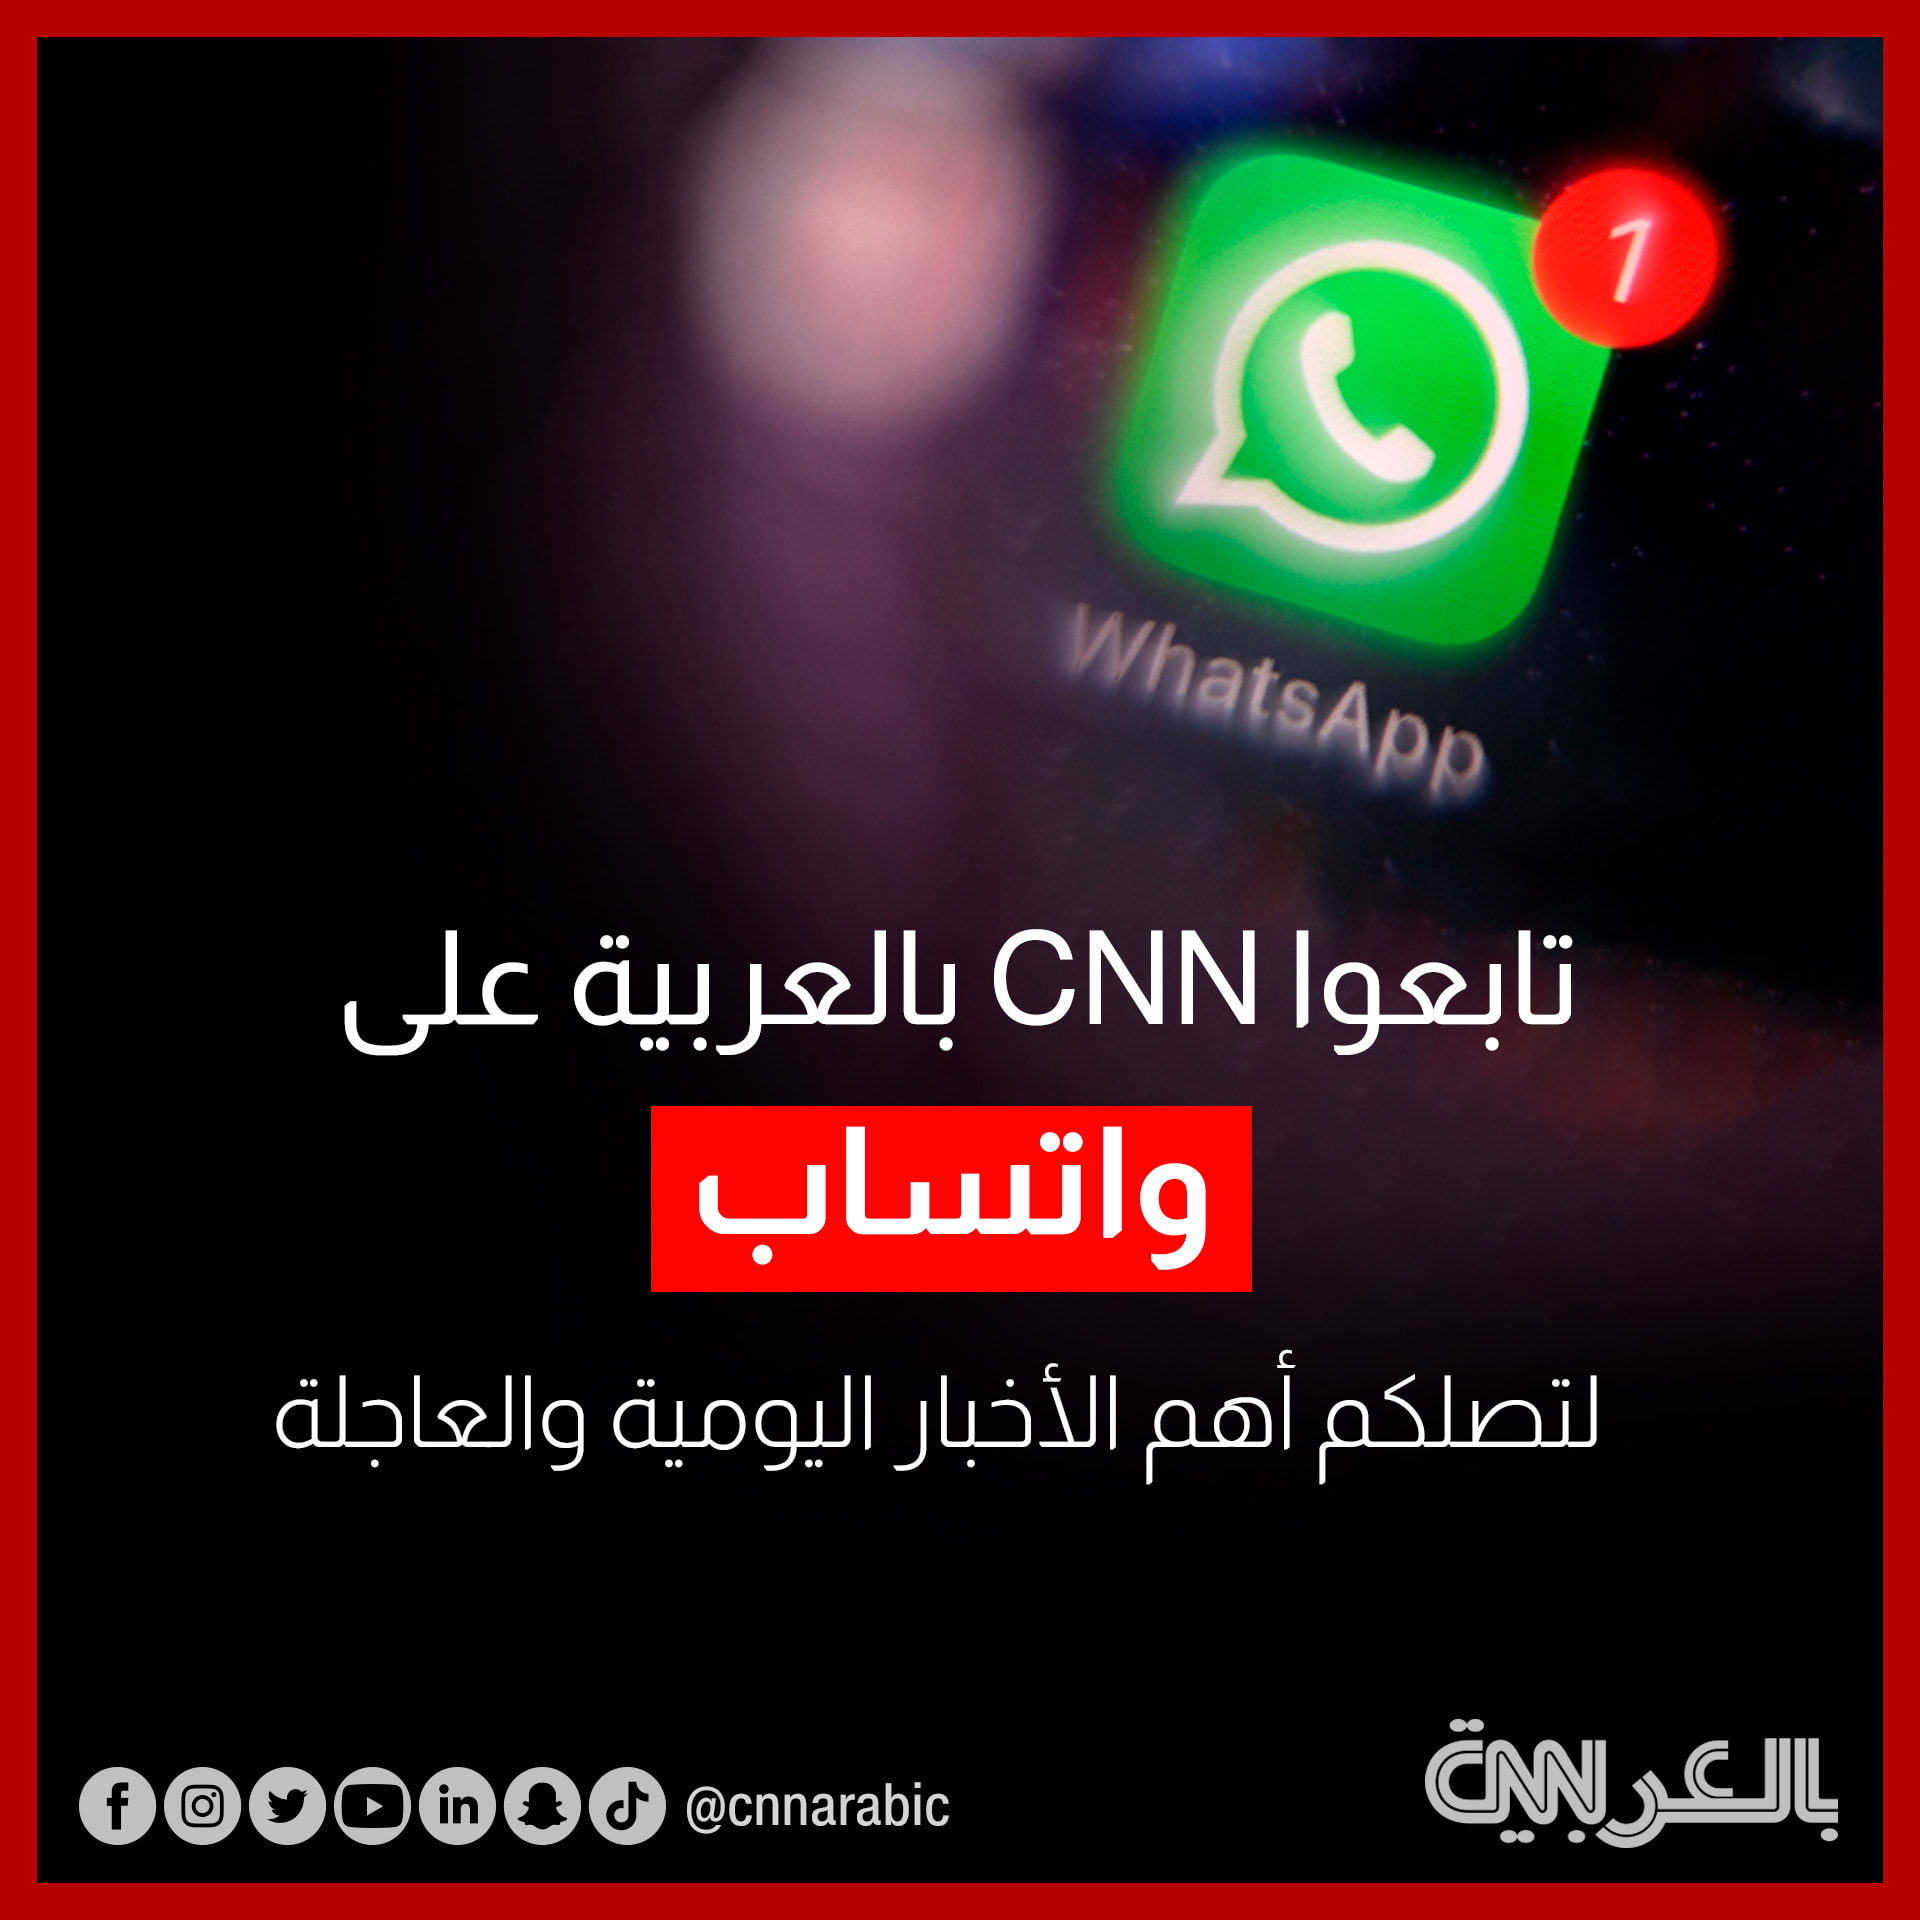 تابعوا أهم الأخبار اليومية والعاجلة من CNN بالعربية عبر قناتنا الجديدة على واتساب